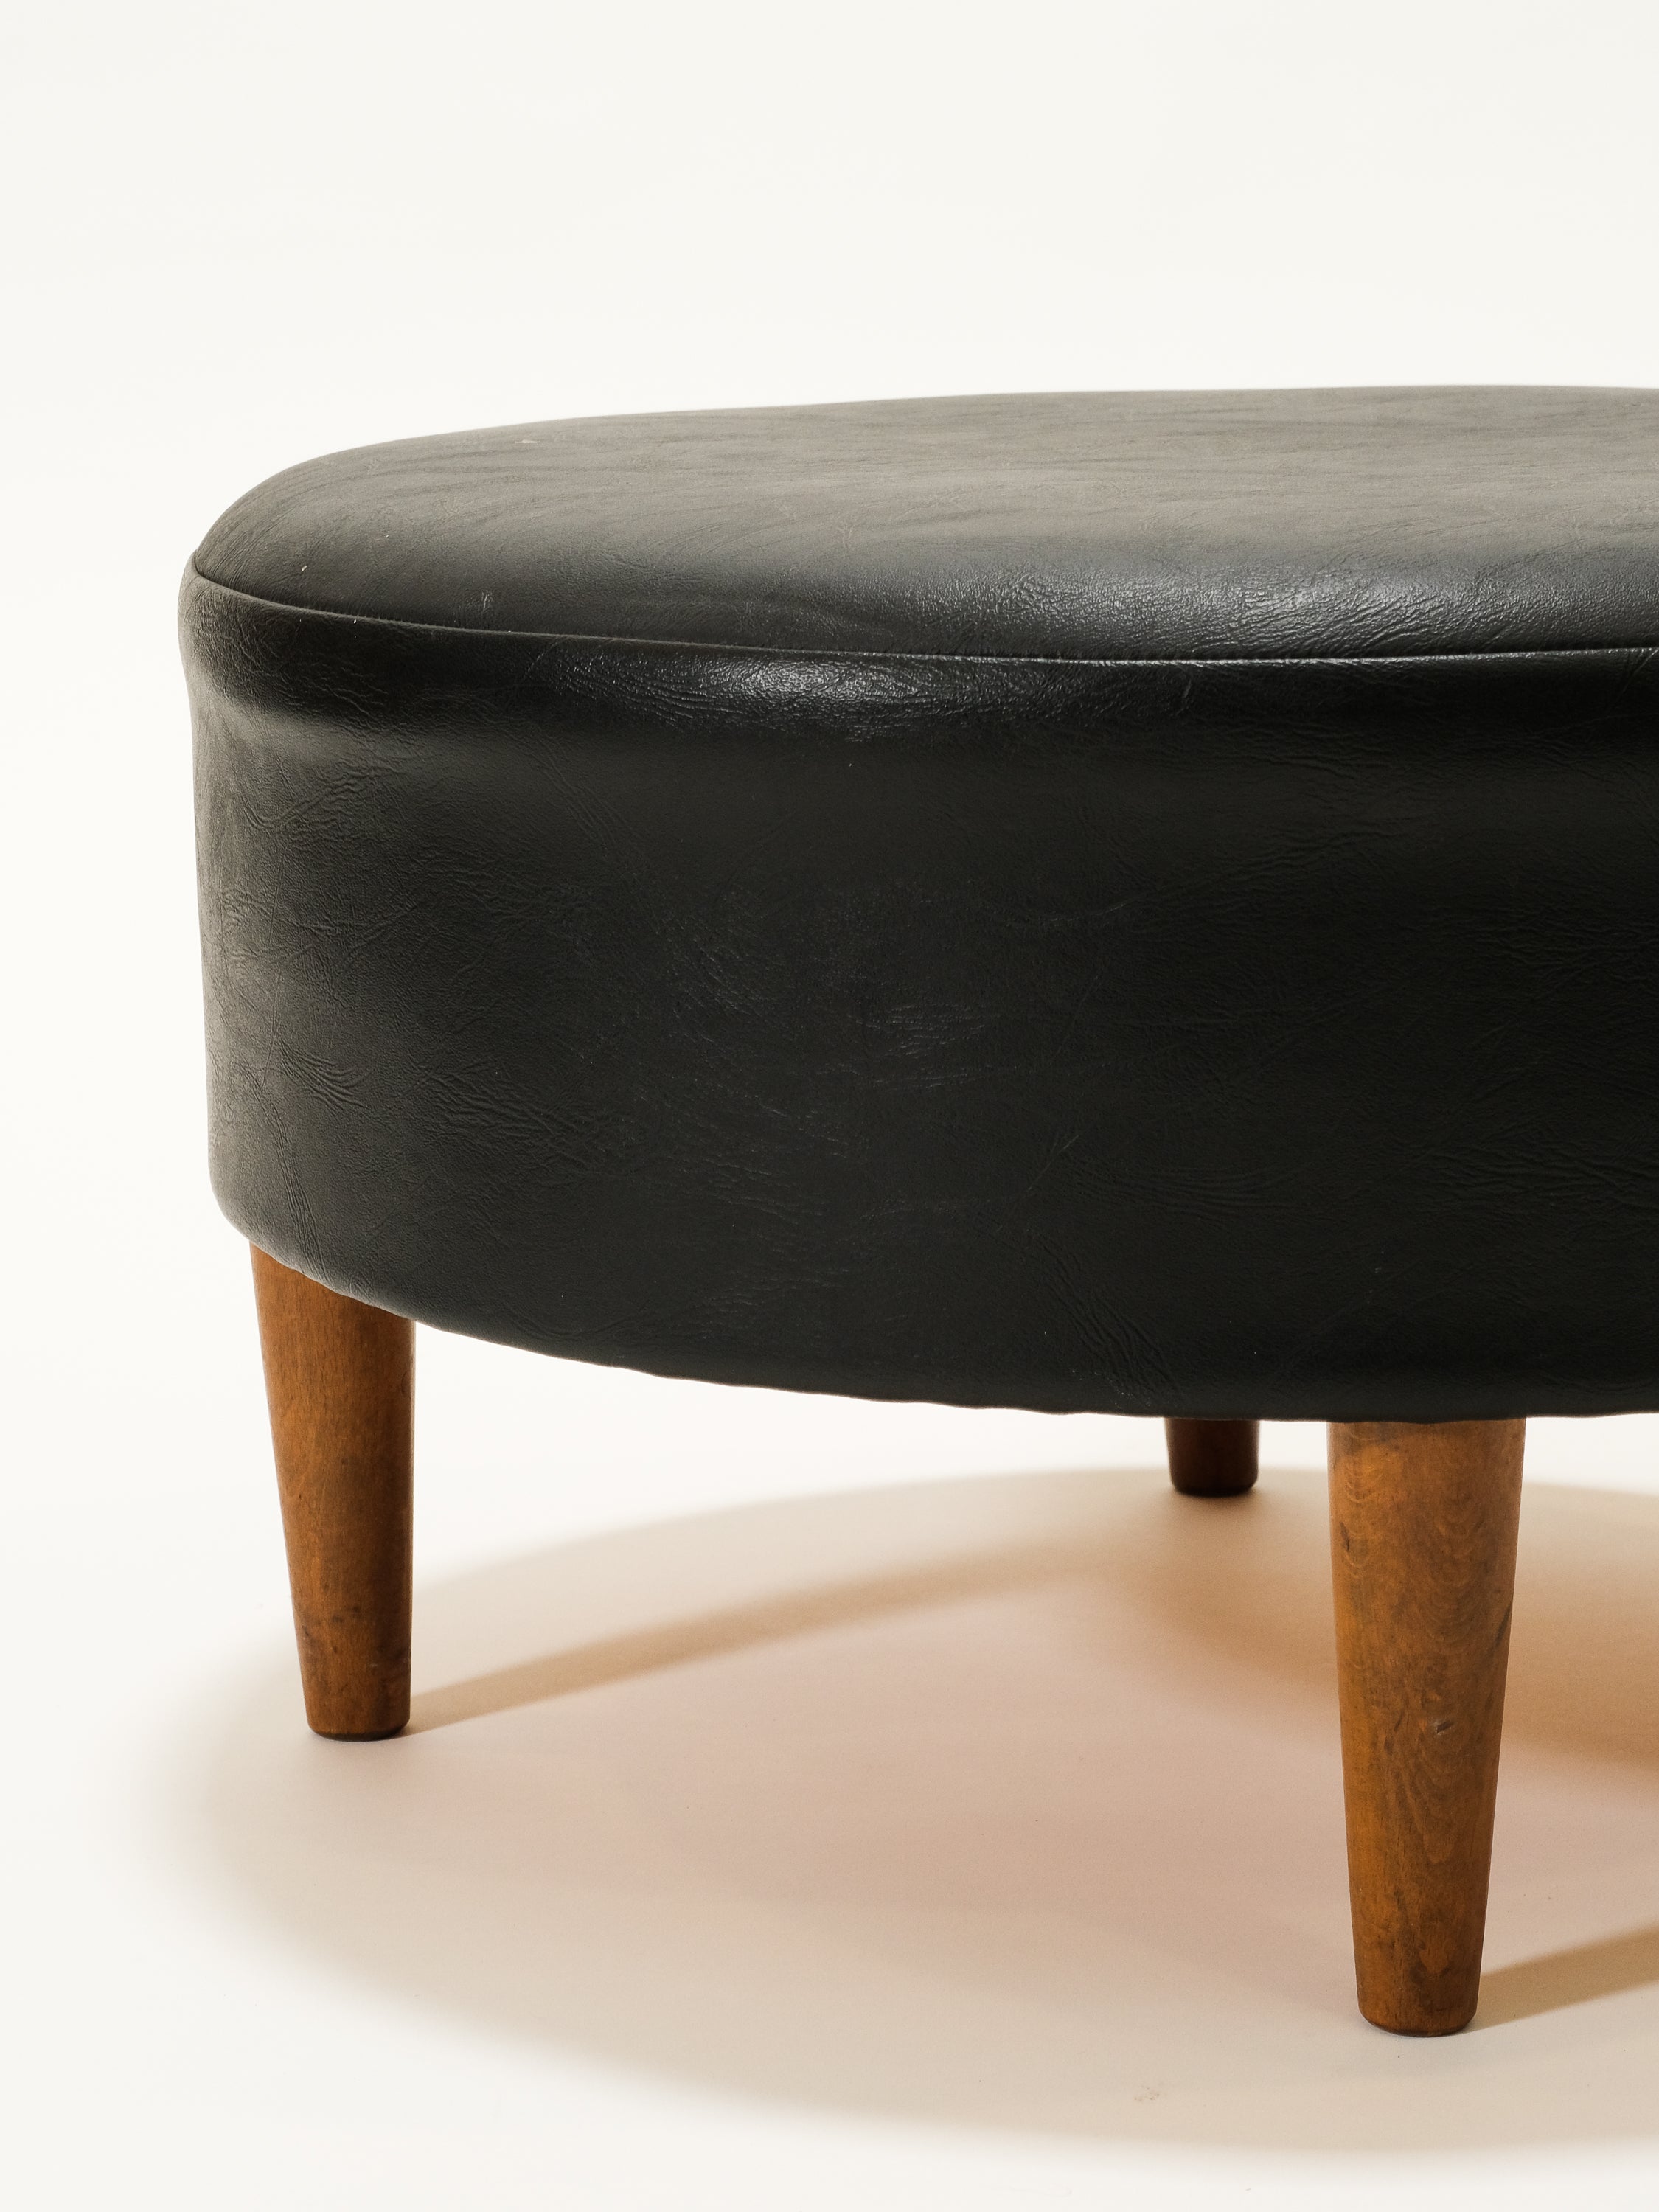 Black Round Leatherette Ottoman / Footstool